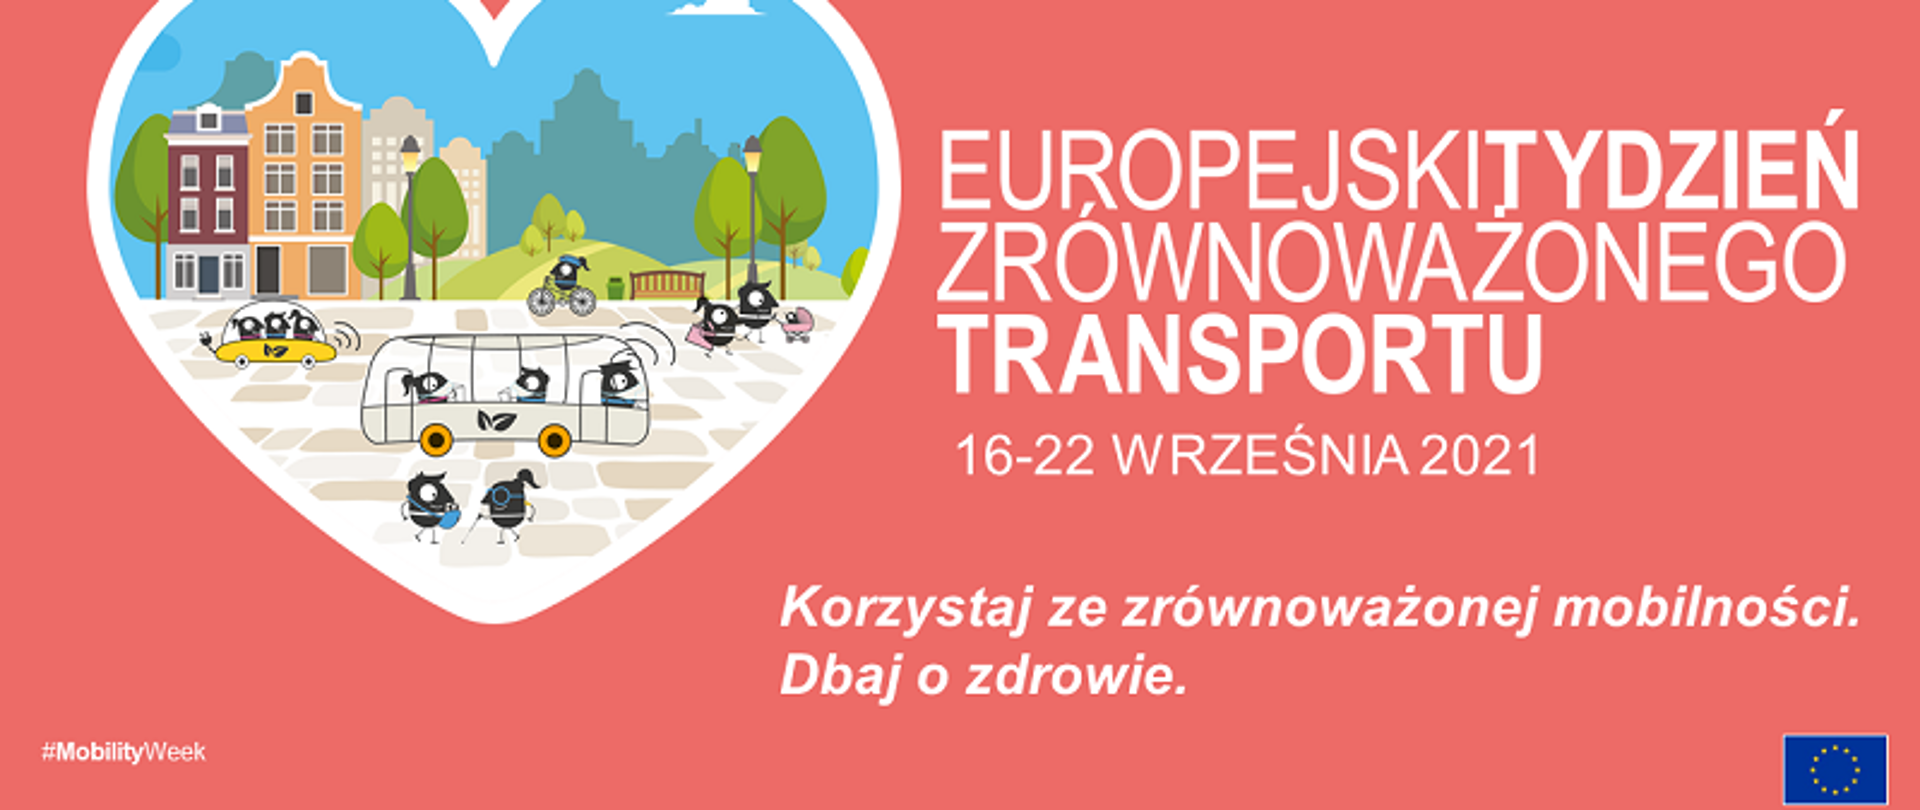 Europejski Tydzień Zrównoważonego Transportu 16-22 września 2021